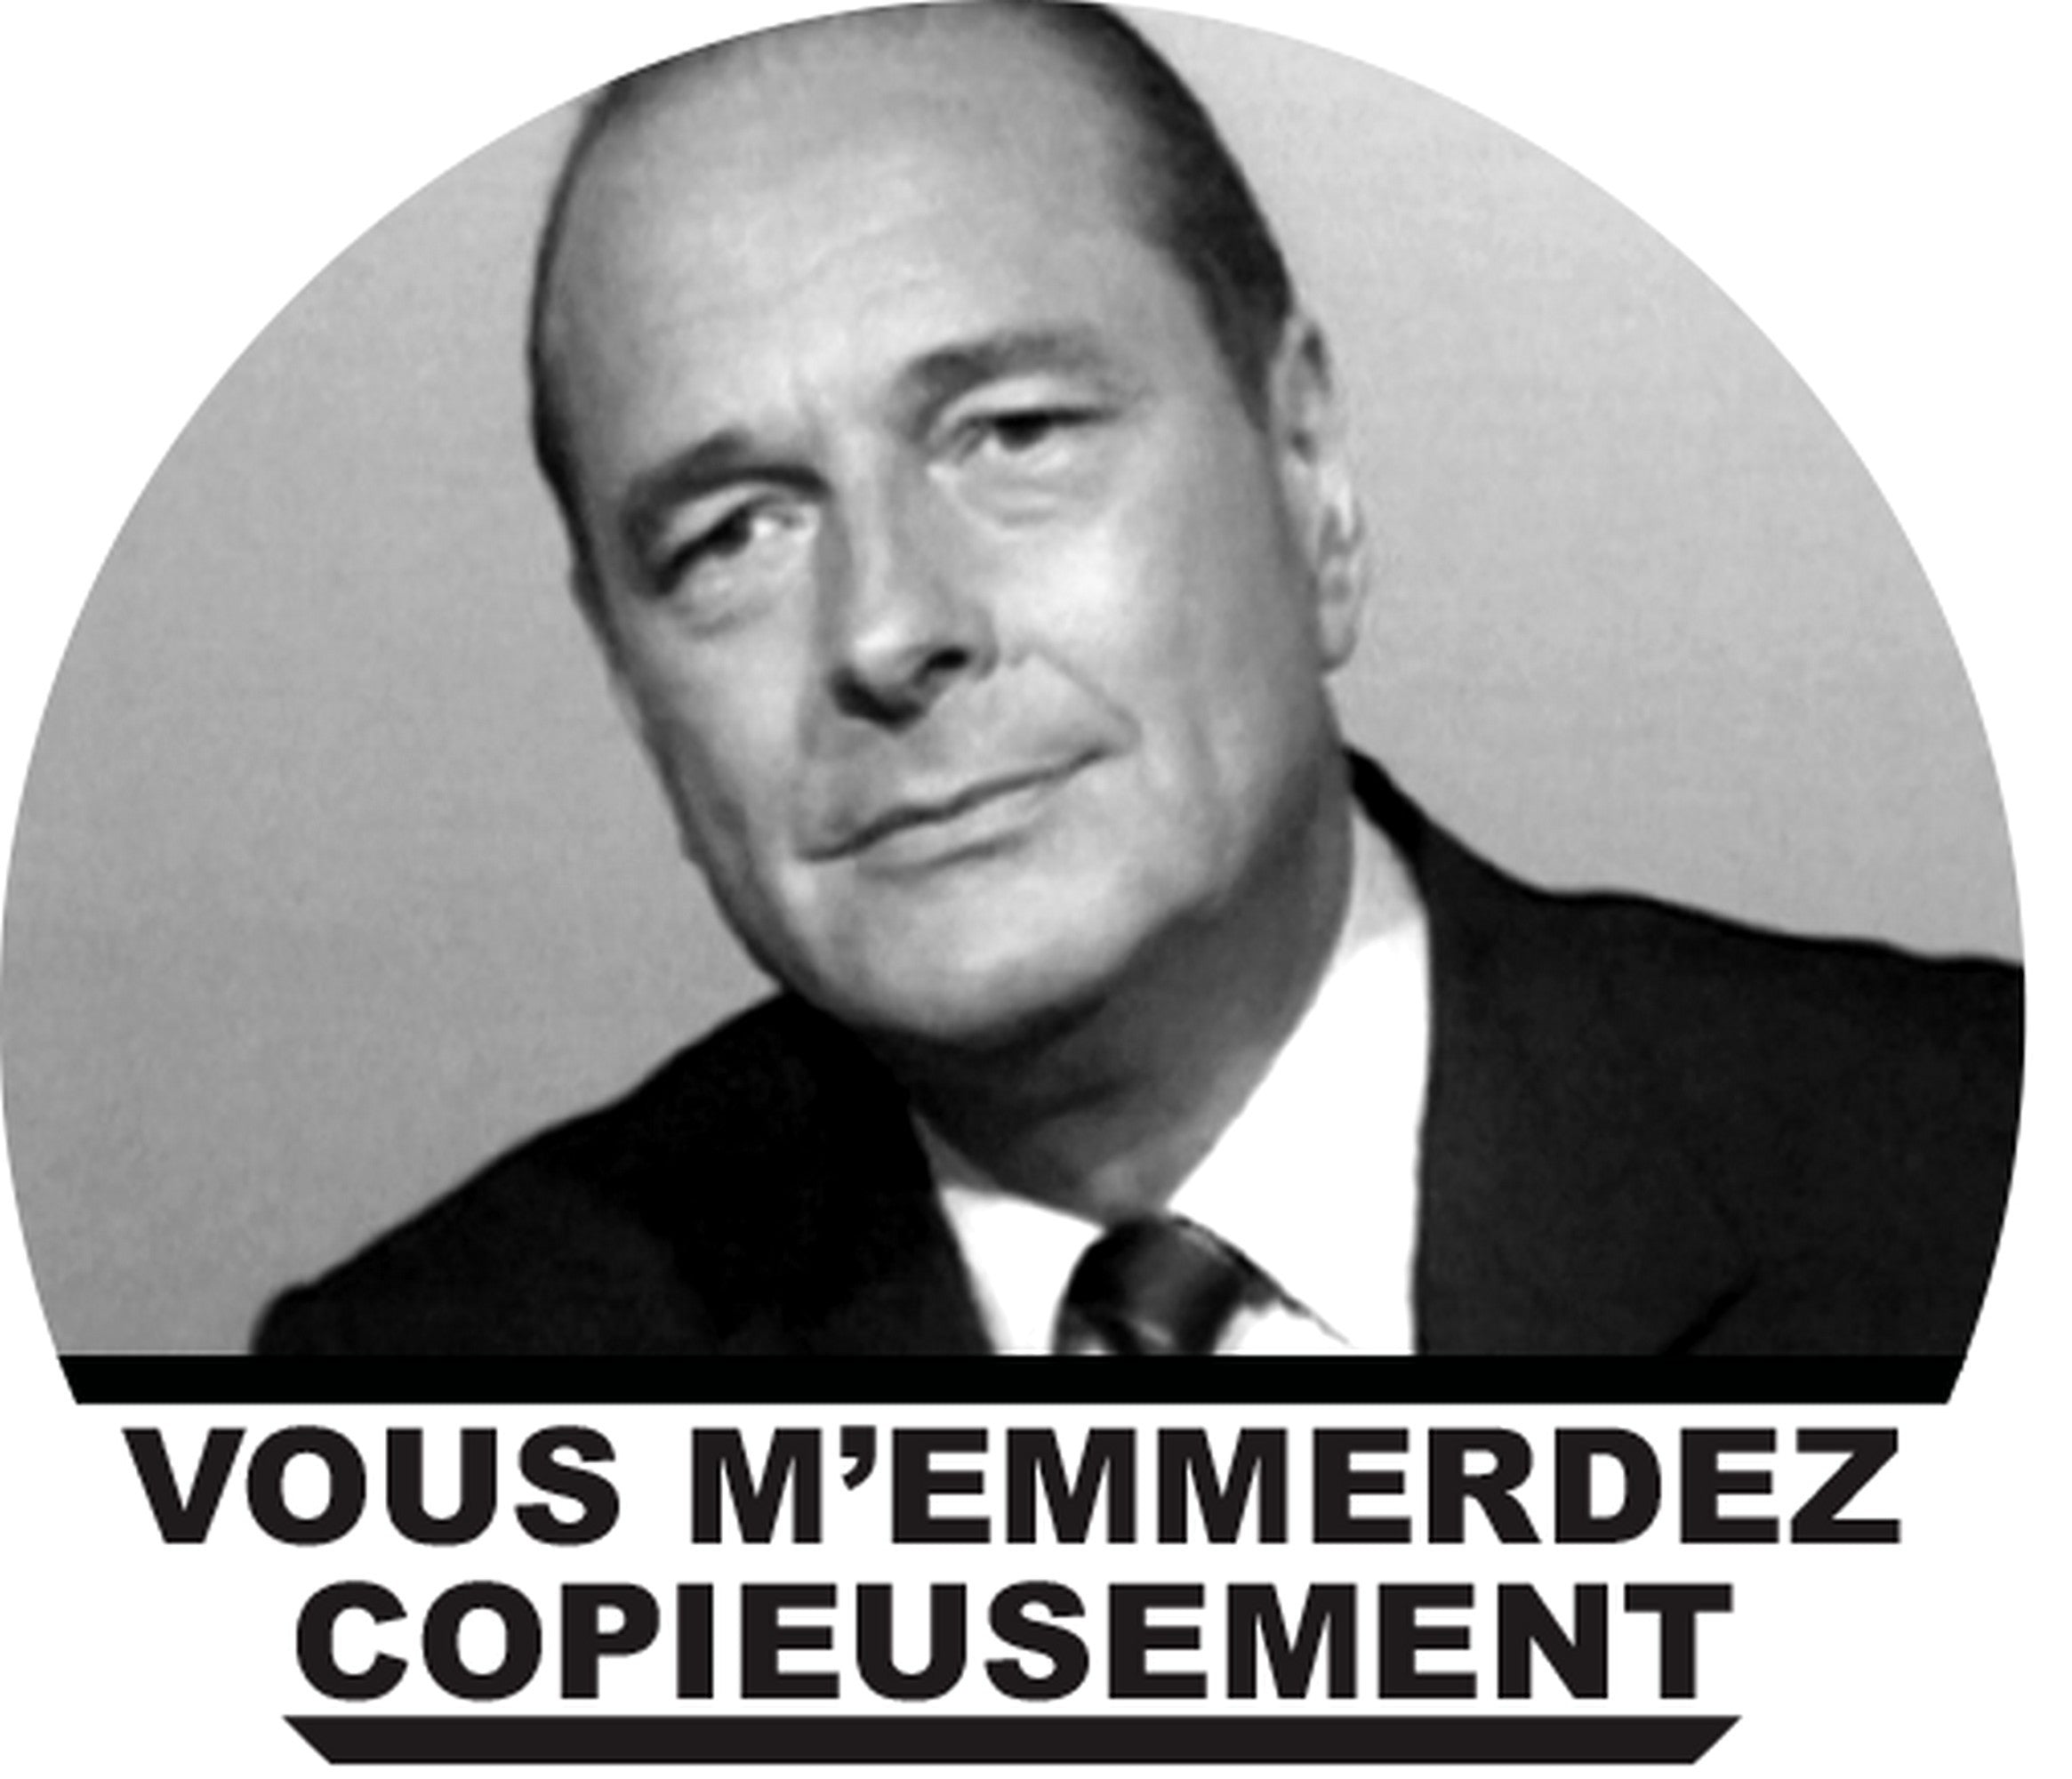 T-shirt Homme Chirac "Vous m'emmerdez copieusement"